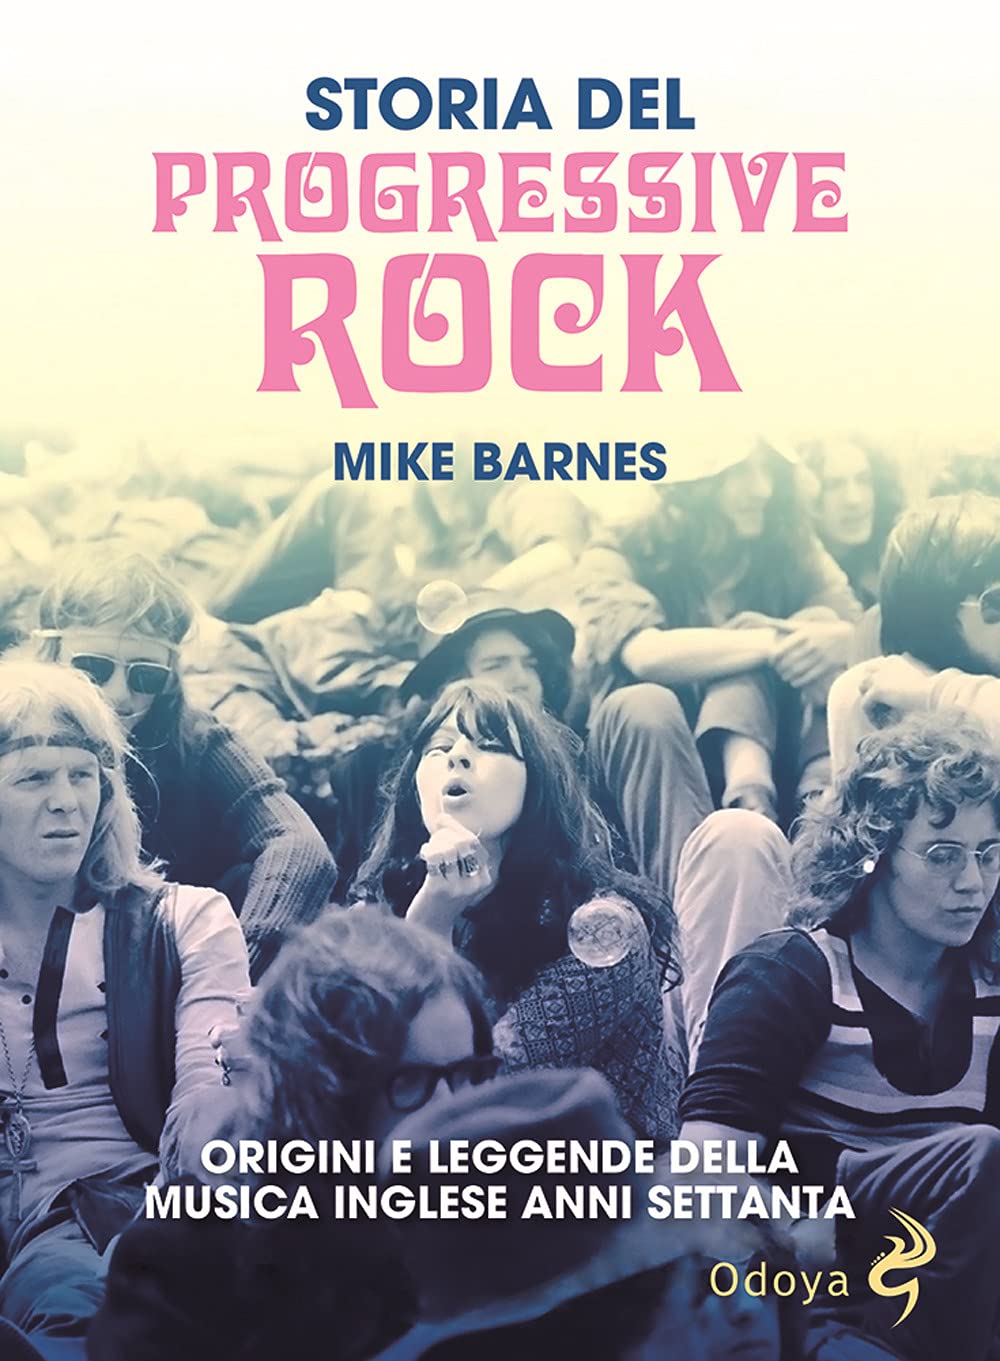 Libri Barnes Mike - Storia Del Progressive Rock. Origini E Leggende Della Musica Inglese Anni Settanta NUOVO SIGILLATO, EDIZIONE DEL 27/05/2021 SUBITO DISPONIBILE